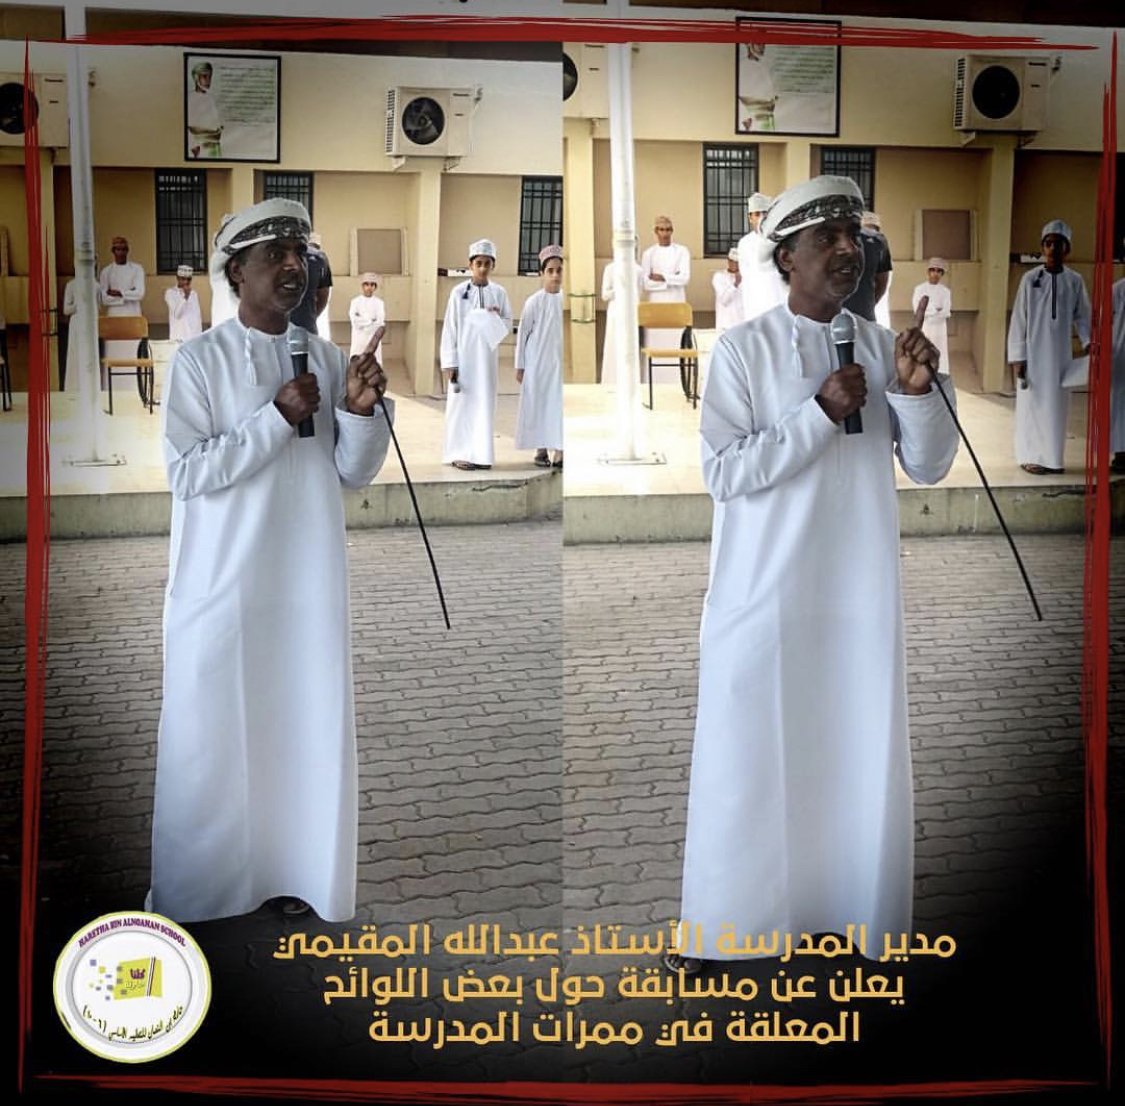 مدير المدرسة الأستاذ عبدالله المقيمي يعلن عن مسابقة حول بعض اللوائح المعلقة في ممرات المدرسة